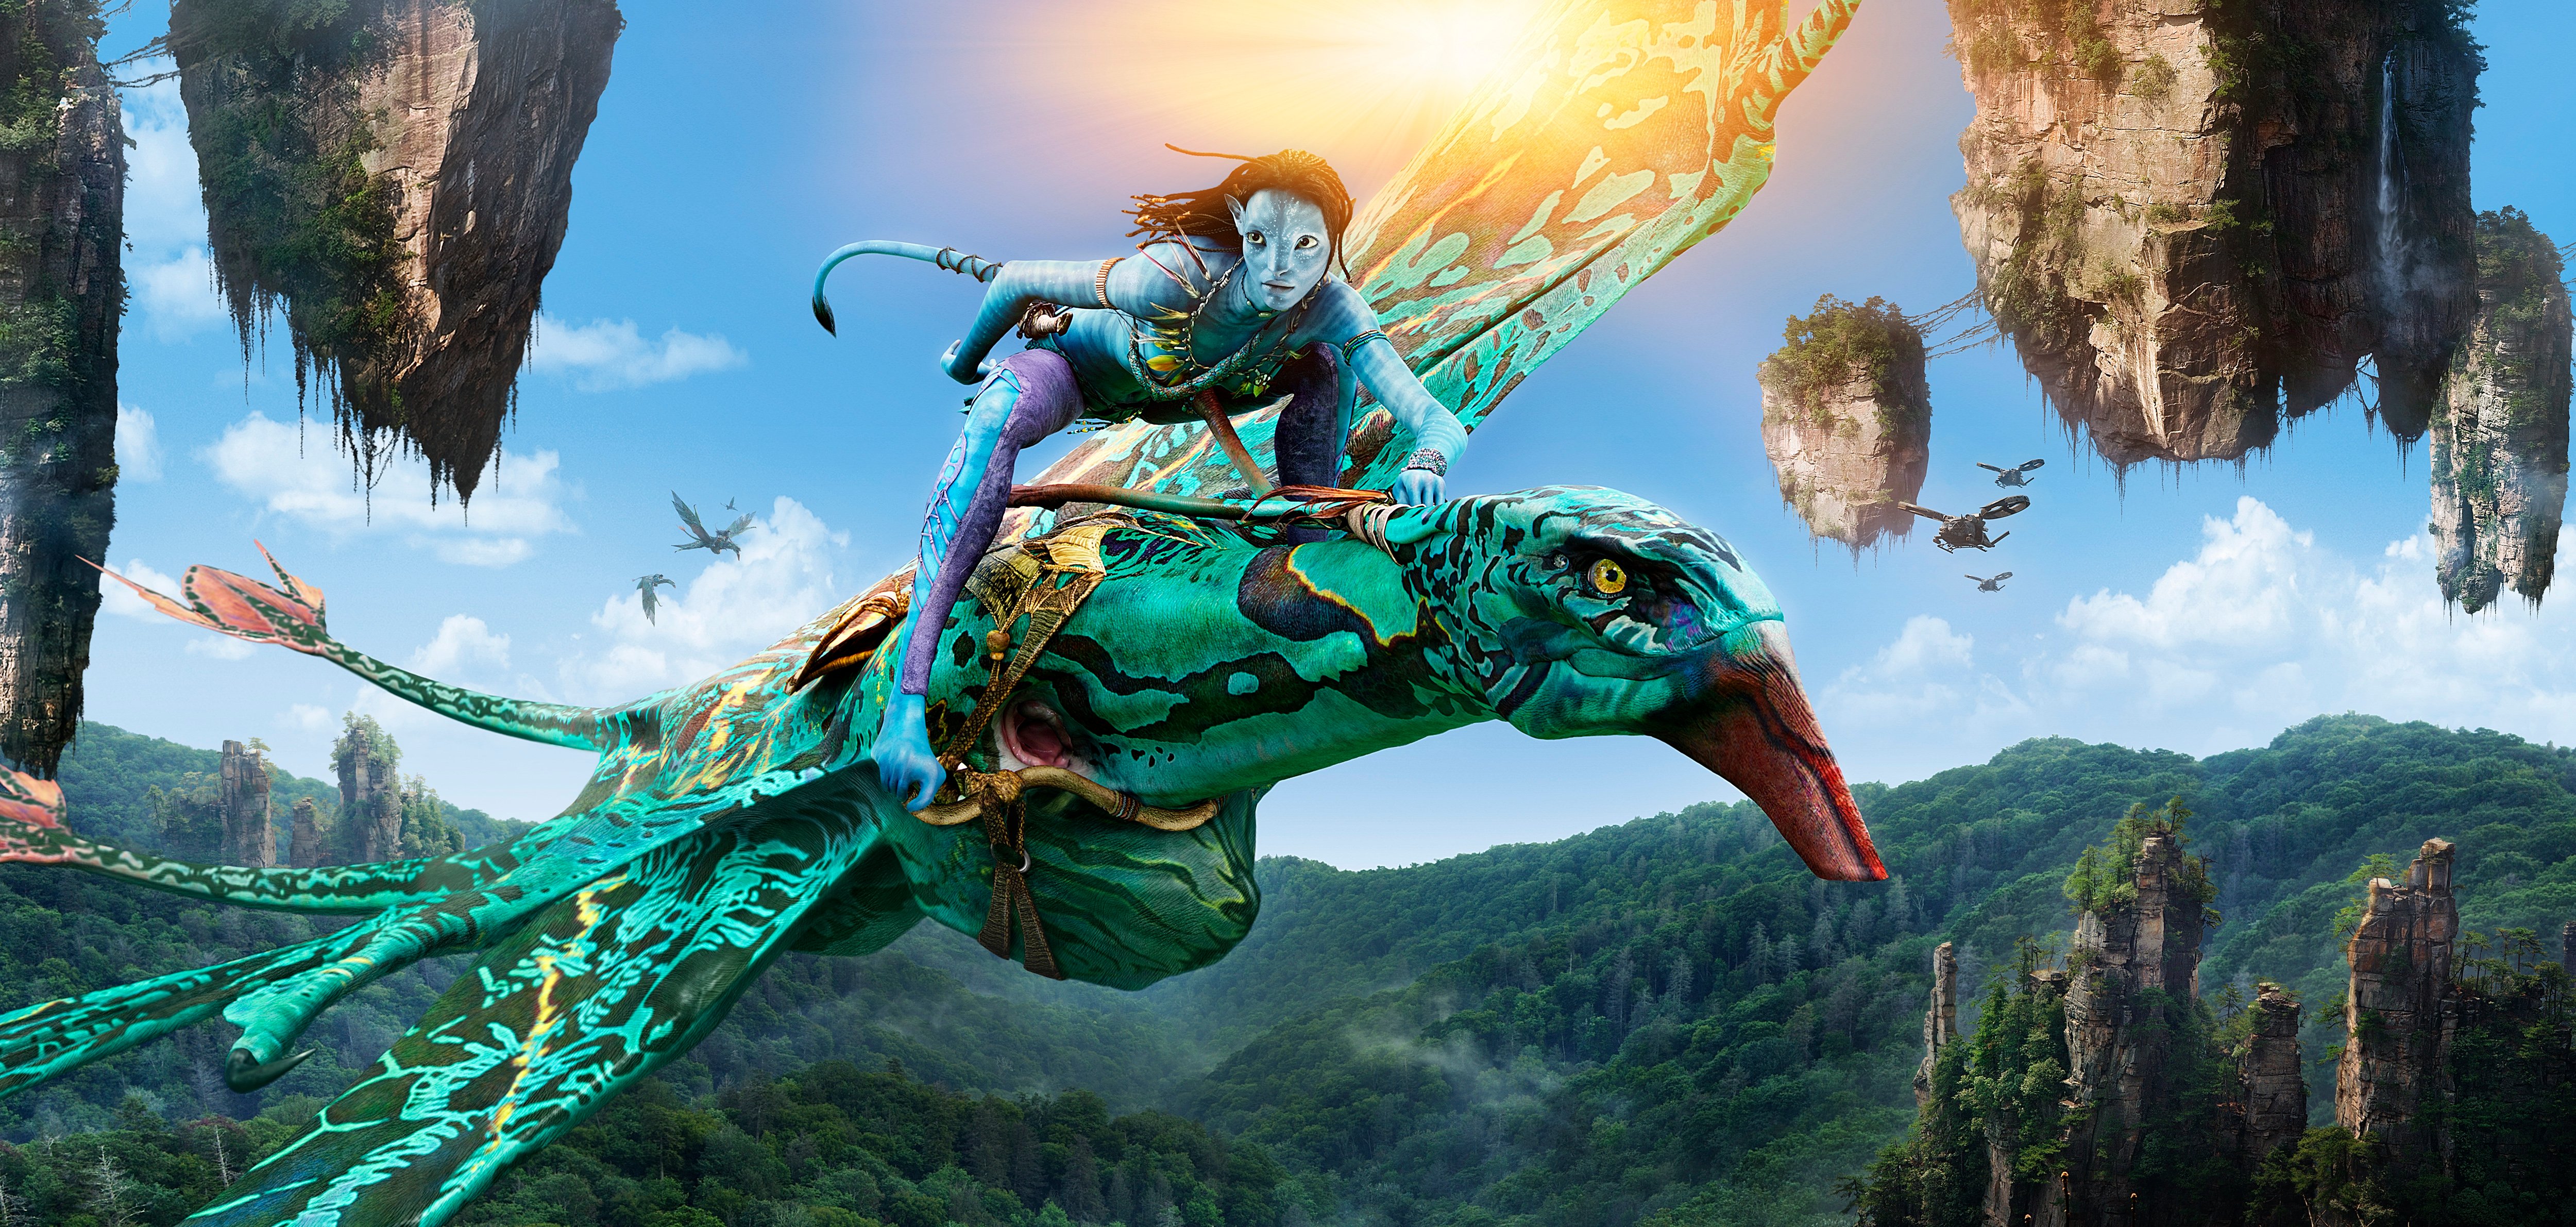 Heart USUK  Điểm khác biệt lớn nhất giữa Avatar 2009 và bản remastered  đang chiếu ngoài rạp nằm ở màu phim và độ nét hình ảnh HDR 4K đồ đó Dễ